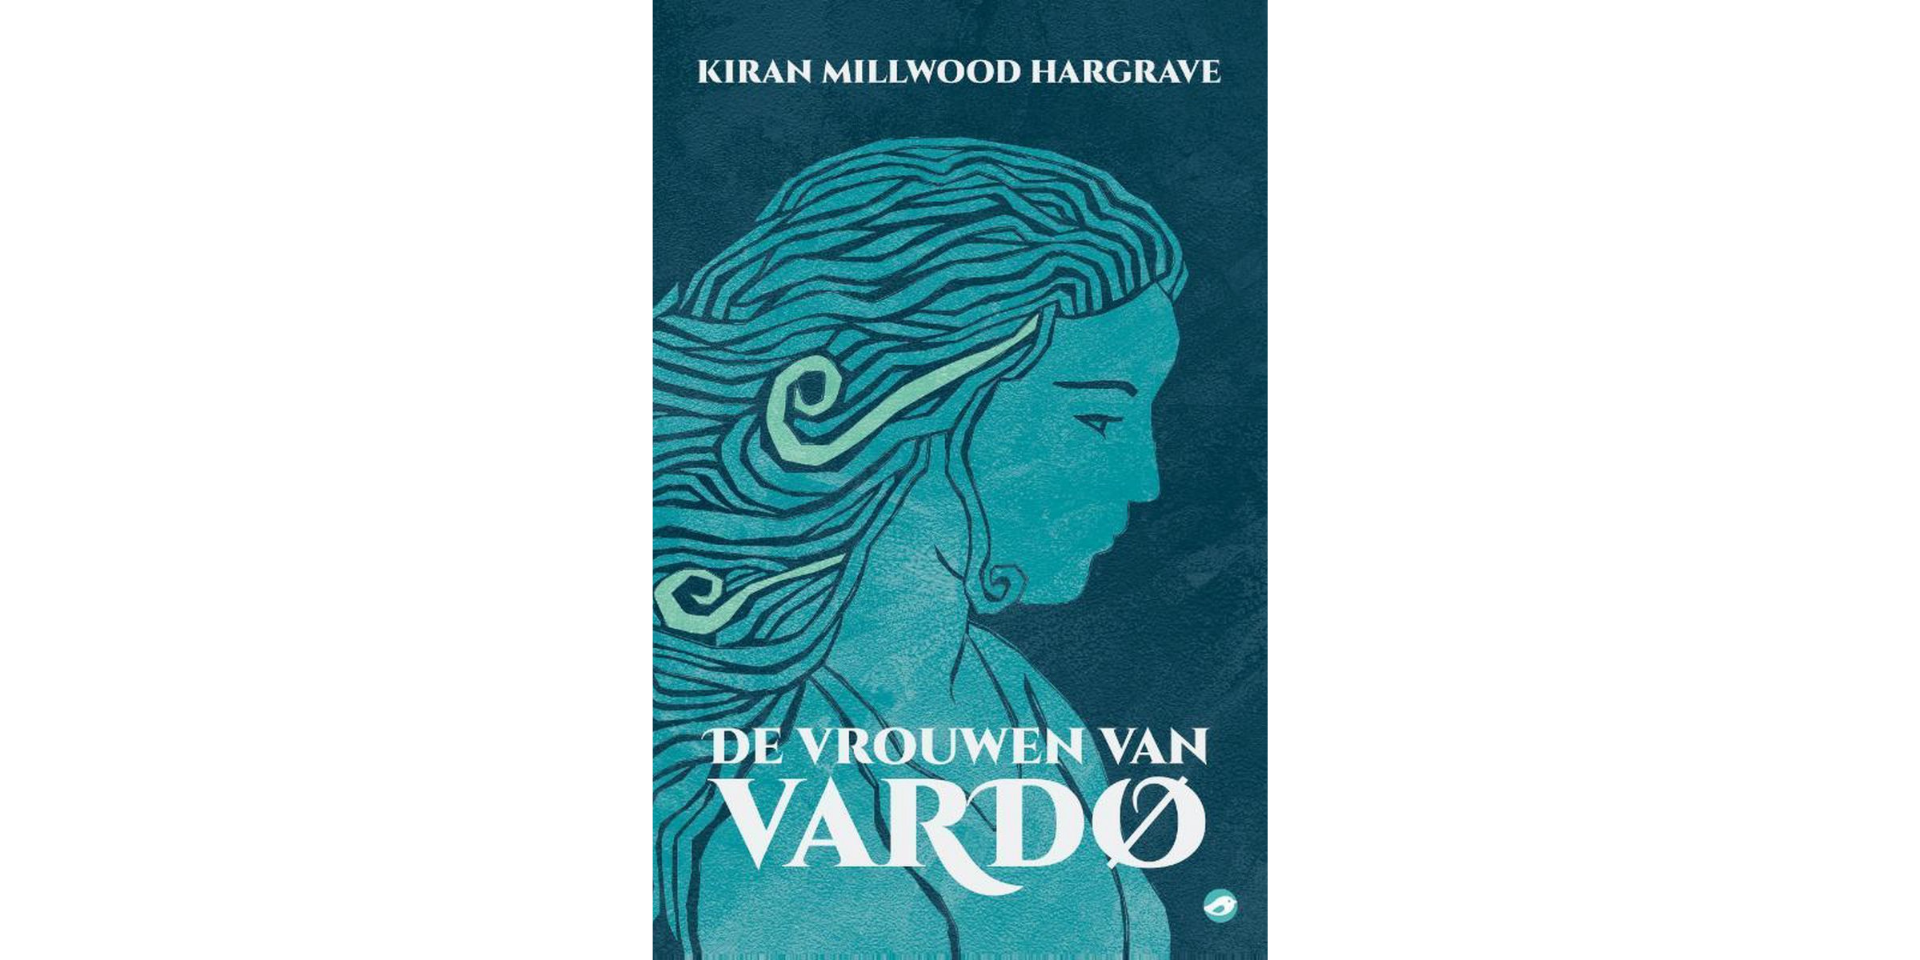 Review: De vrouwen van Vardœ